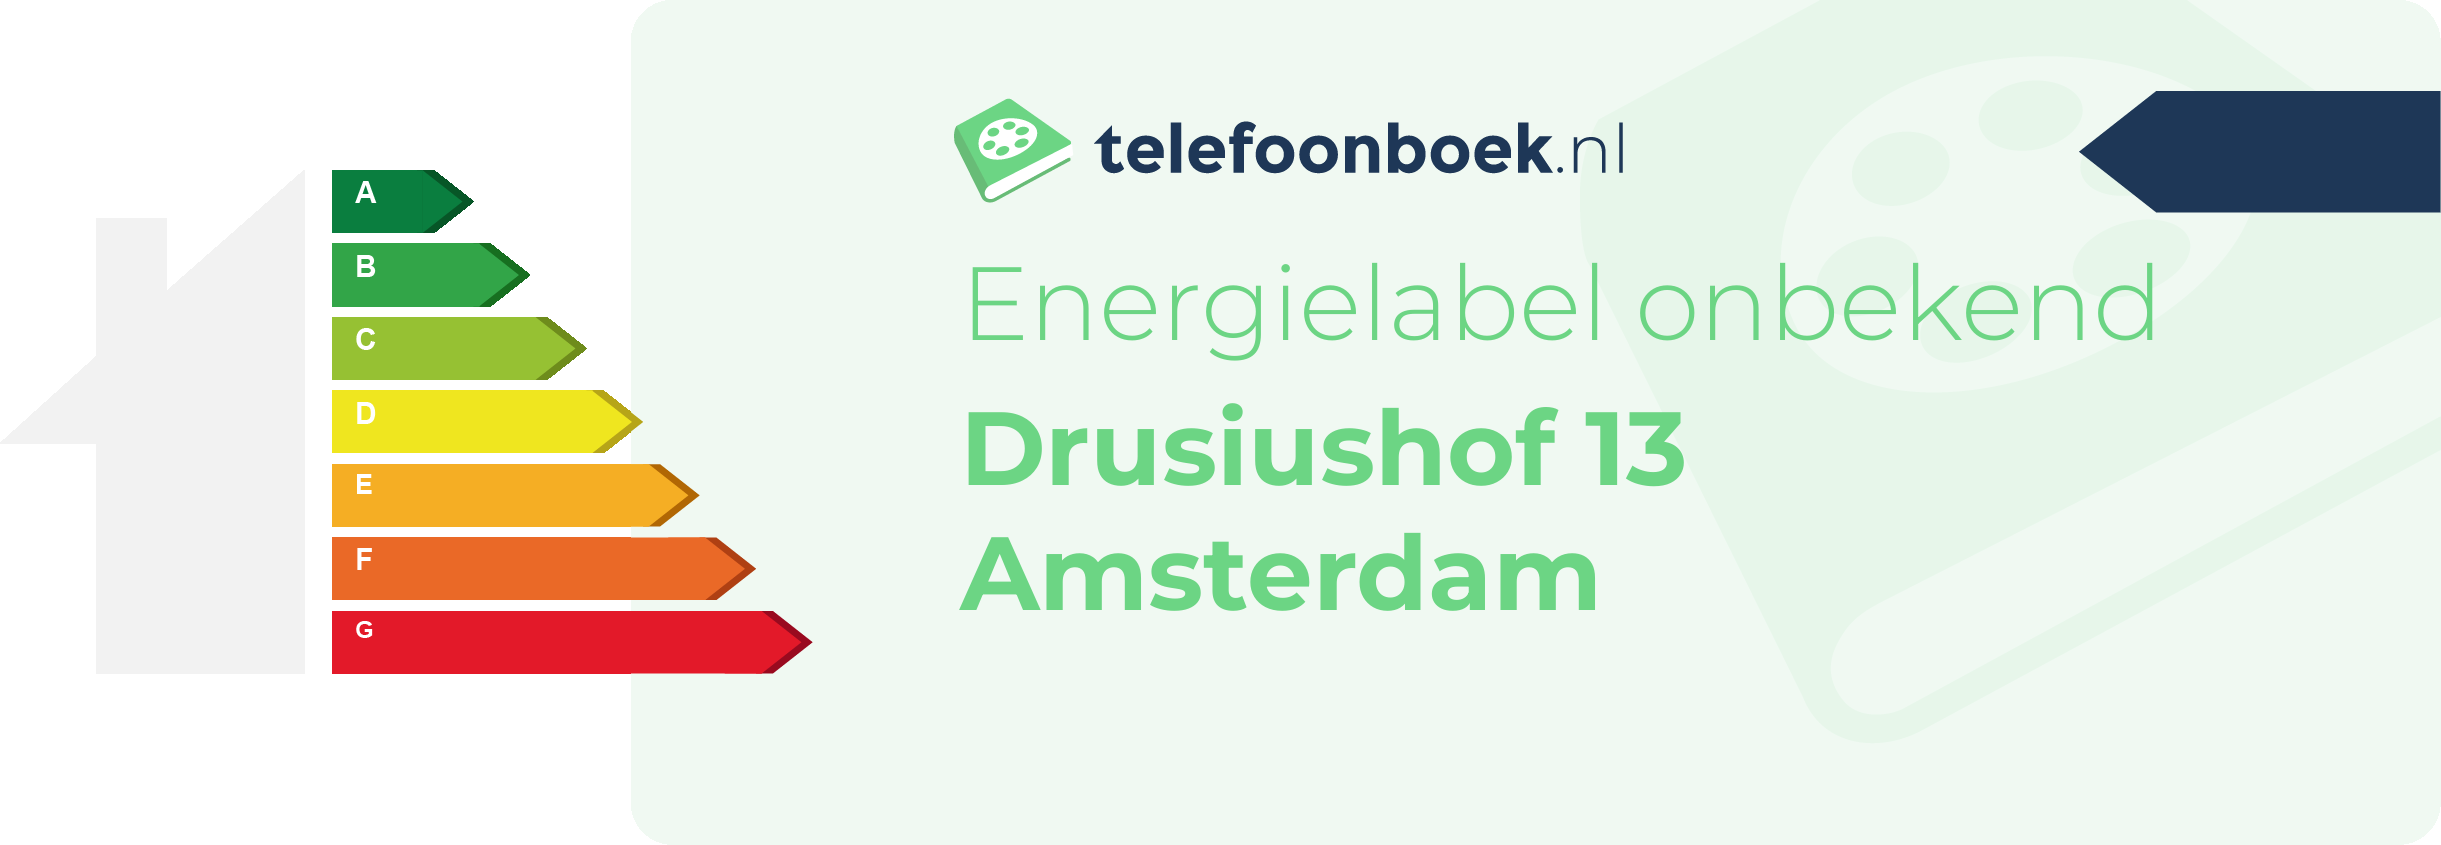 Energielabel Drusiushof 13 Amsterdam